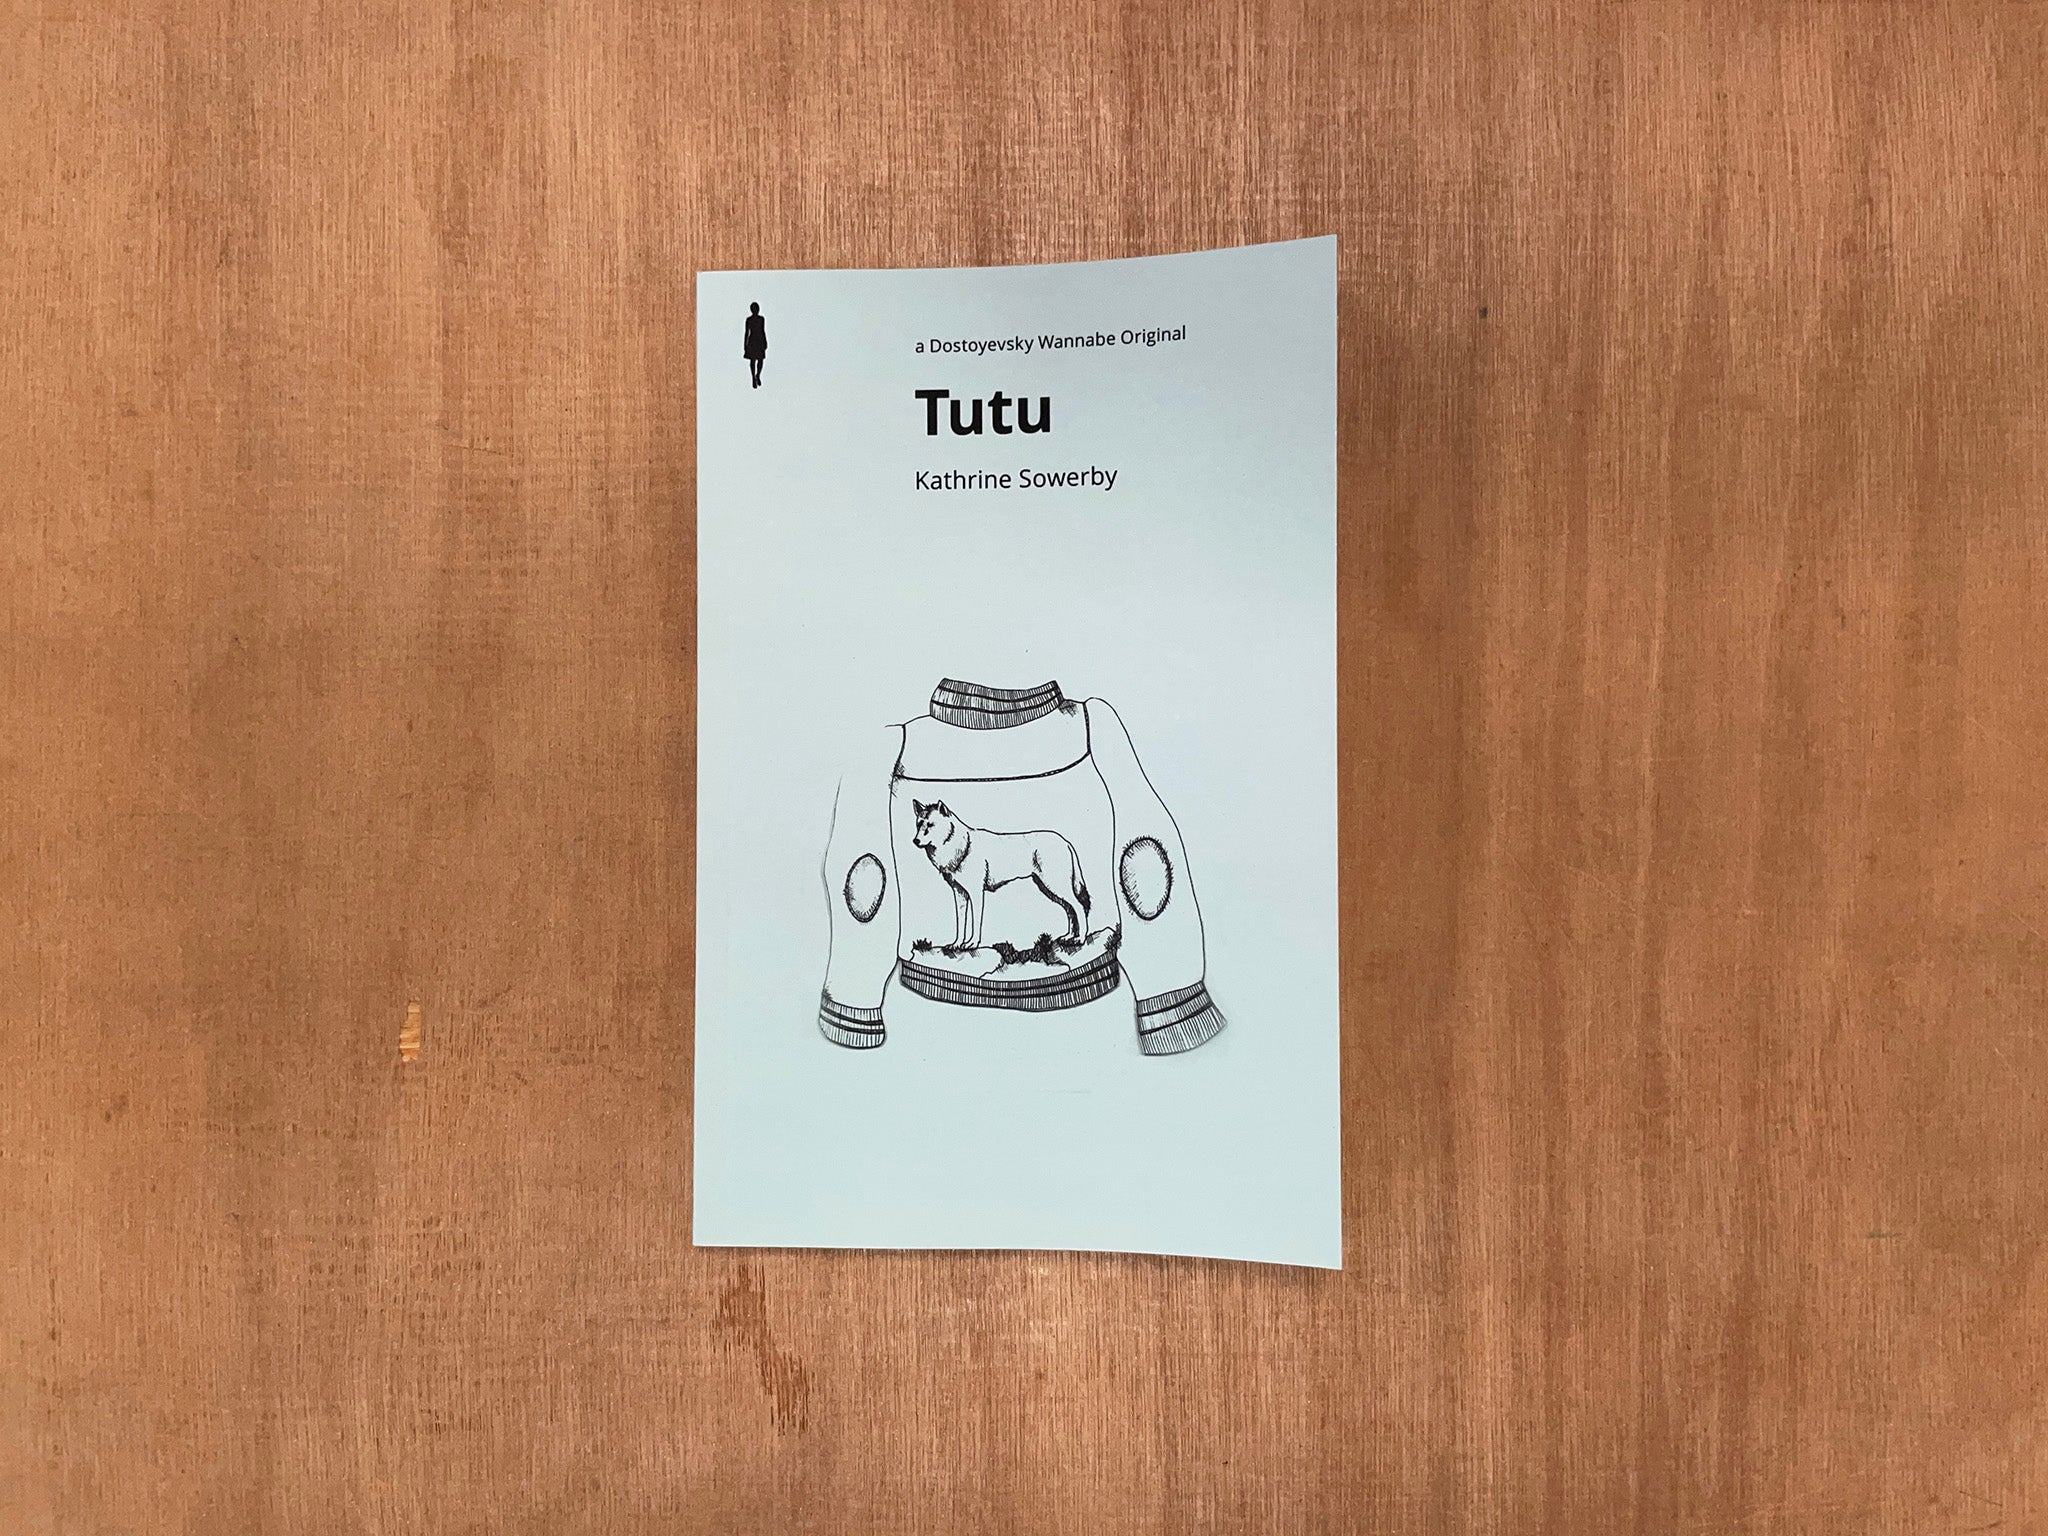 TUTU by Kathrine Sowerby